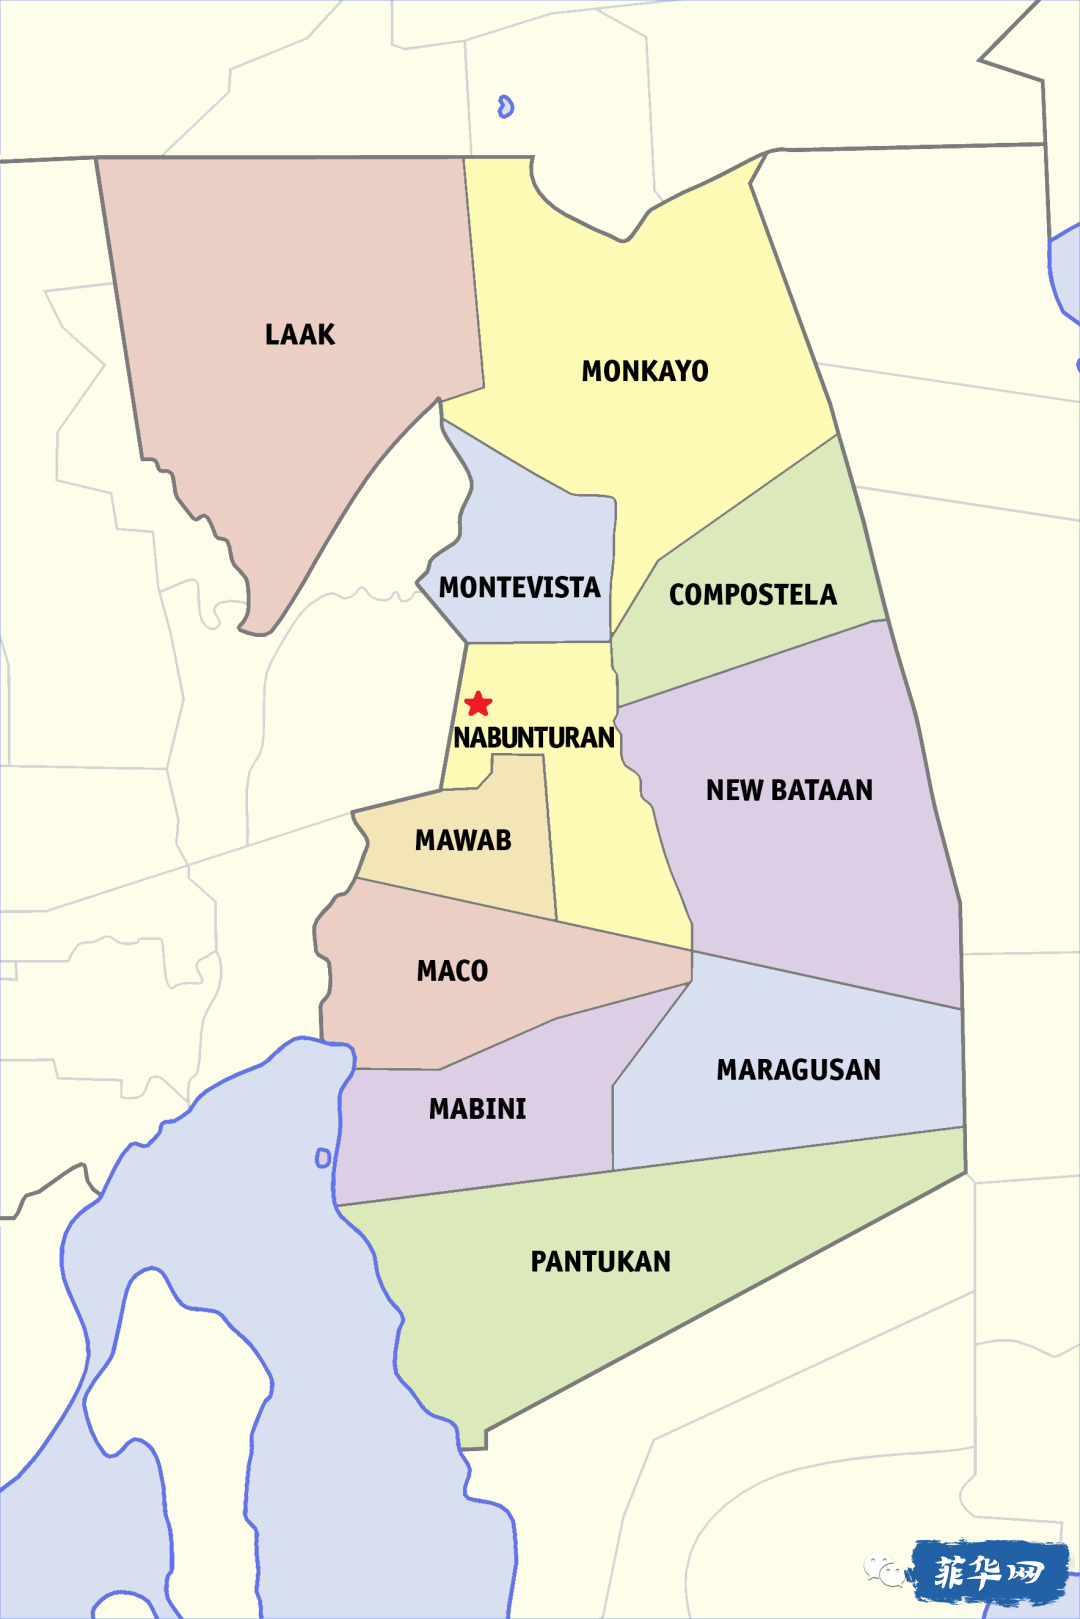 菲律宾达沃大区次级区划及其排名第一的景点w23.jpg